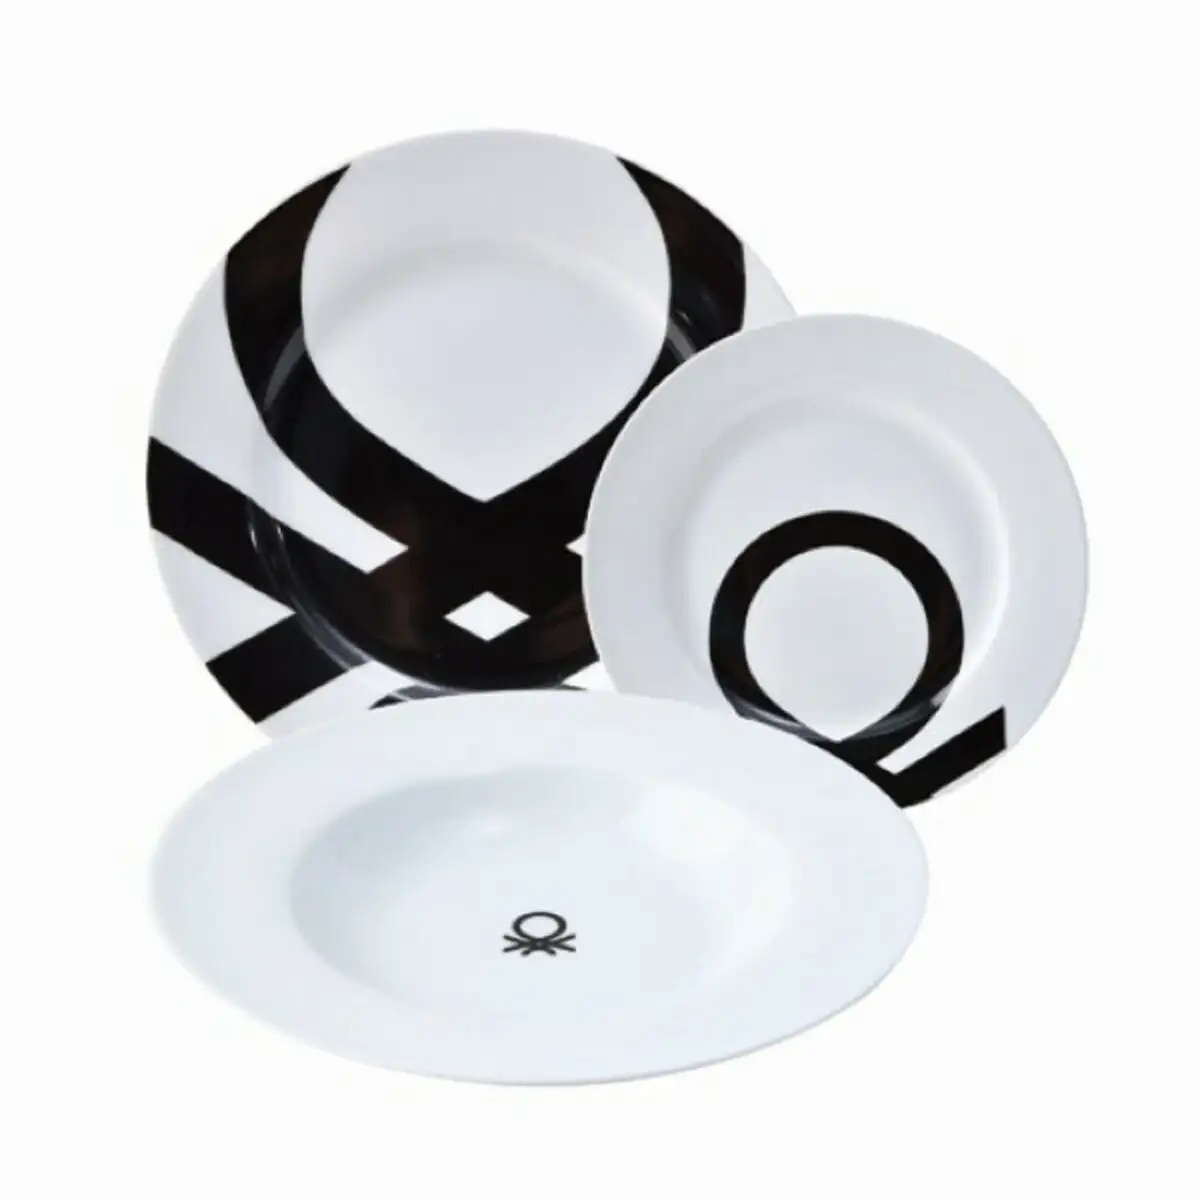 Vaisselle benetton noir blanc porcelaine 18 pcs_7635. DIAYTAR SENEGAL - Où la Qualité et la Diversité Fusionnent. Explorez notre boutique en ligne pour découvrir une gamme variée de produits qui incarnent l'excellence et l'authenticité.